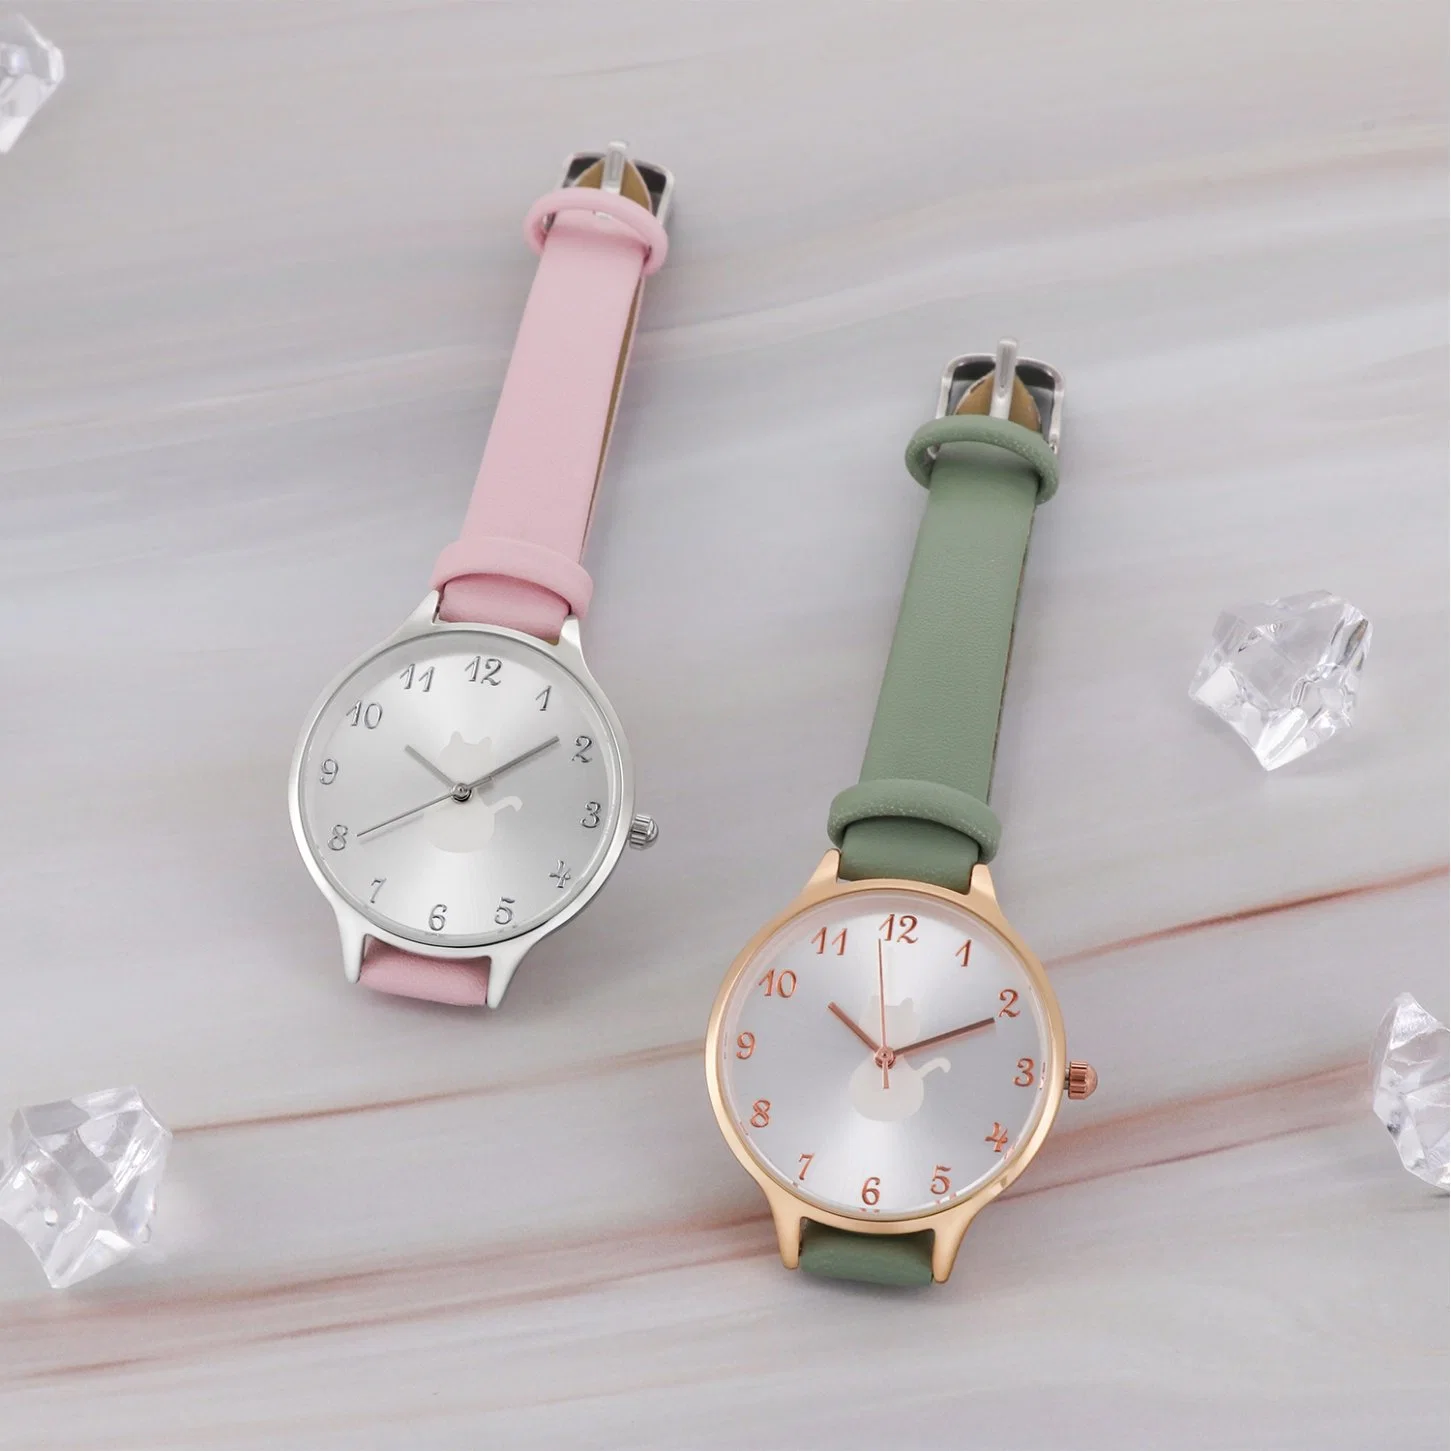 Armbanduhr mit Damenuhr Fashionl Uhr für Geschenk-Uhr Lederuhr Quarzuhr Fashion Watch Edelstahl Uhr Analog Damenuhr